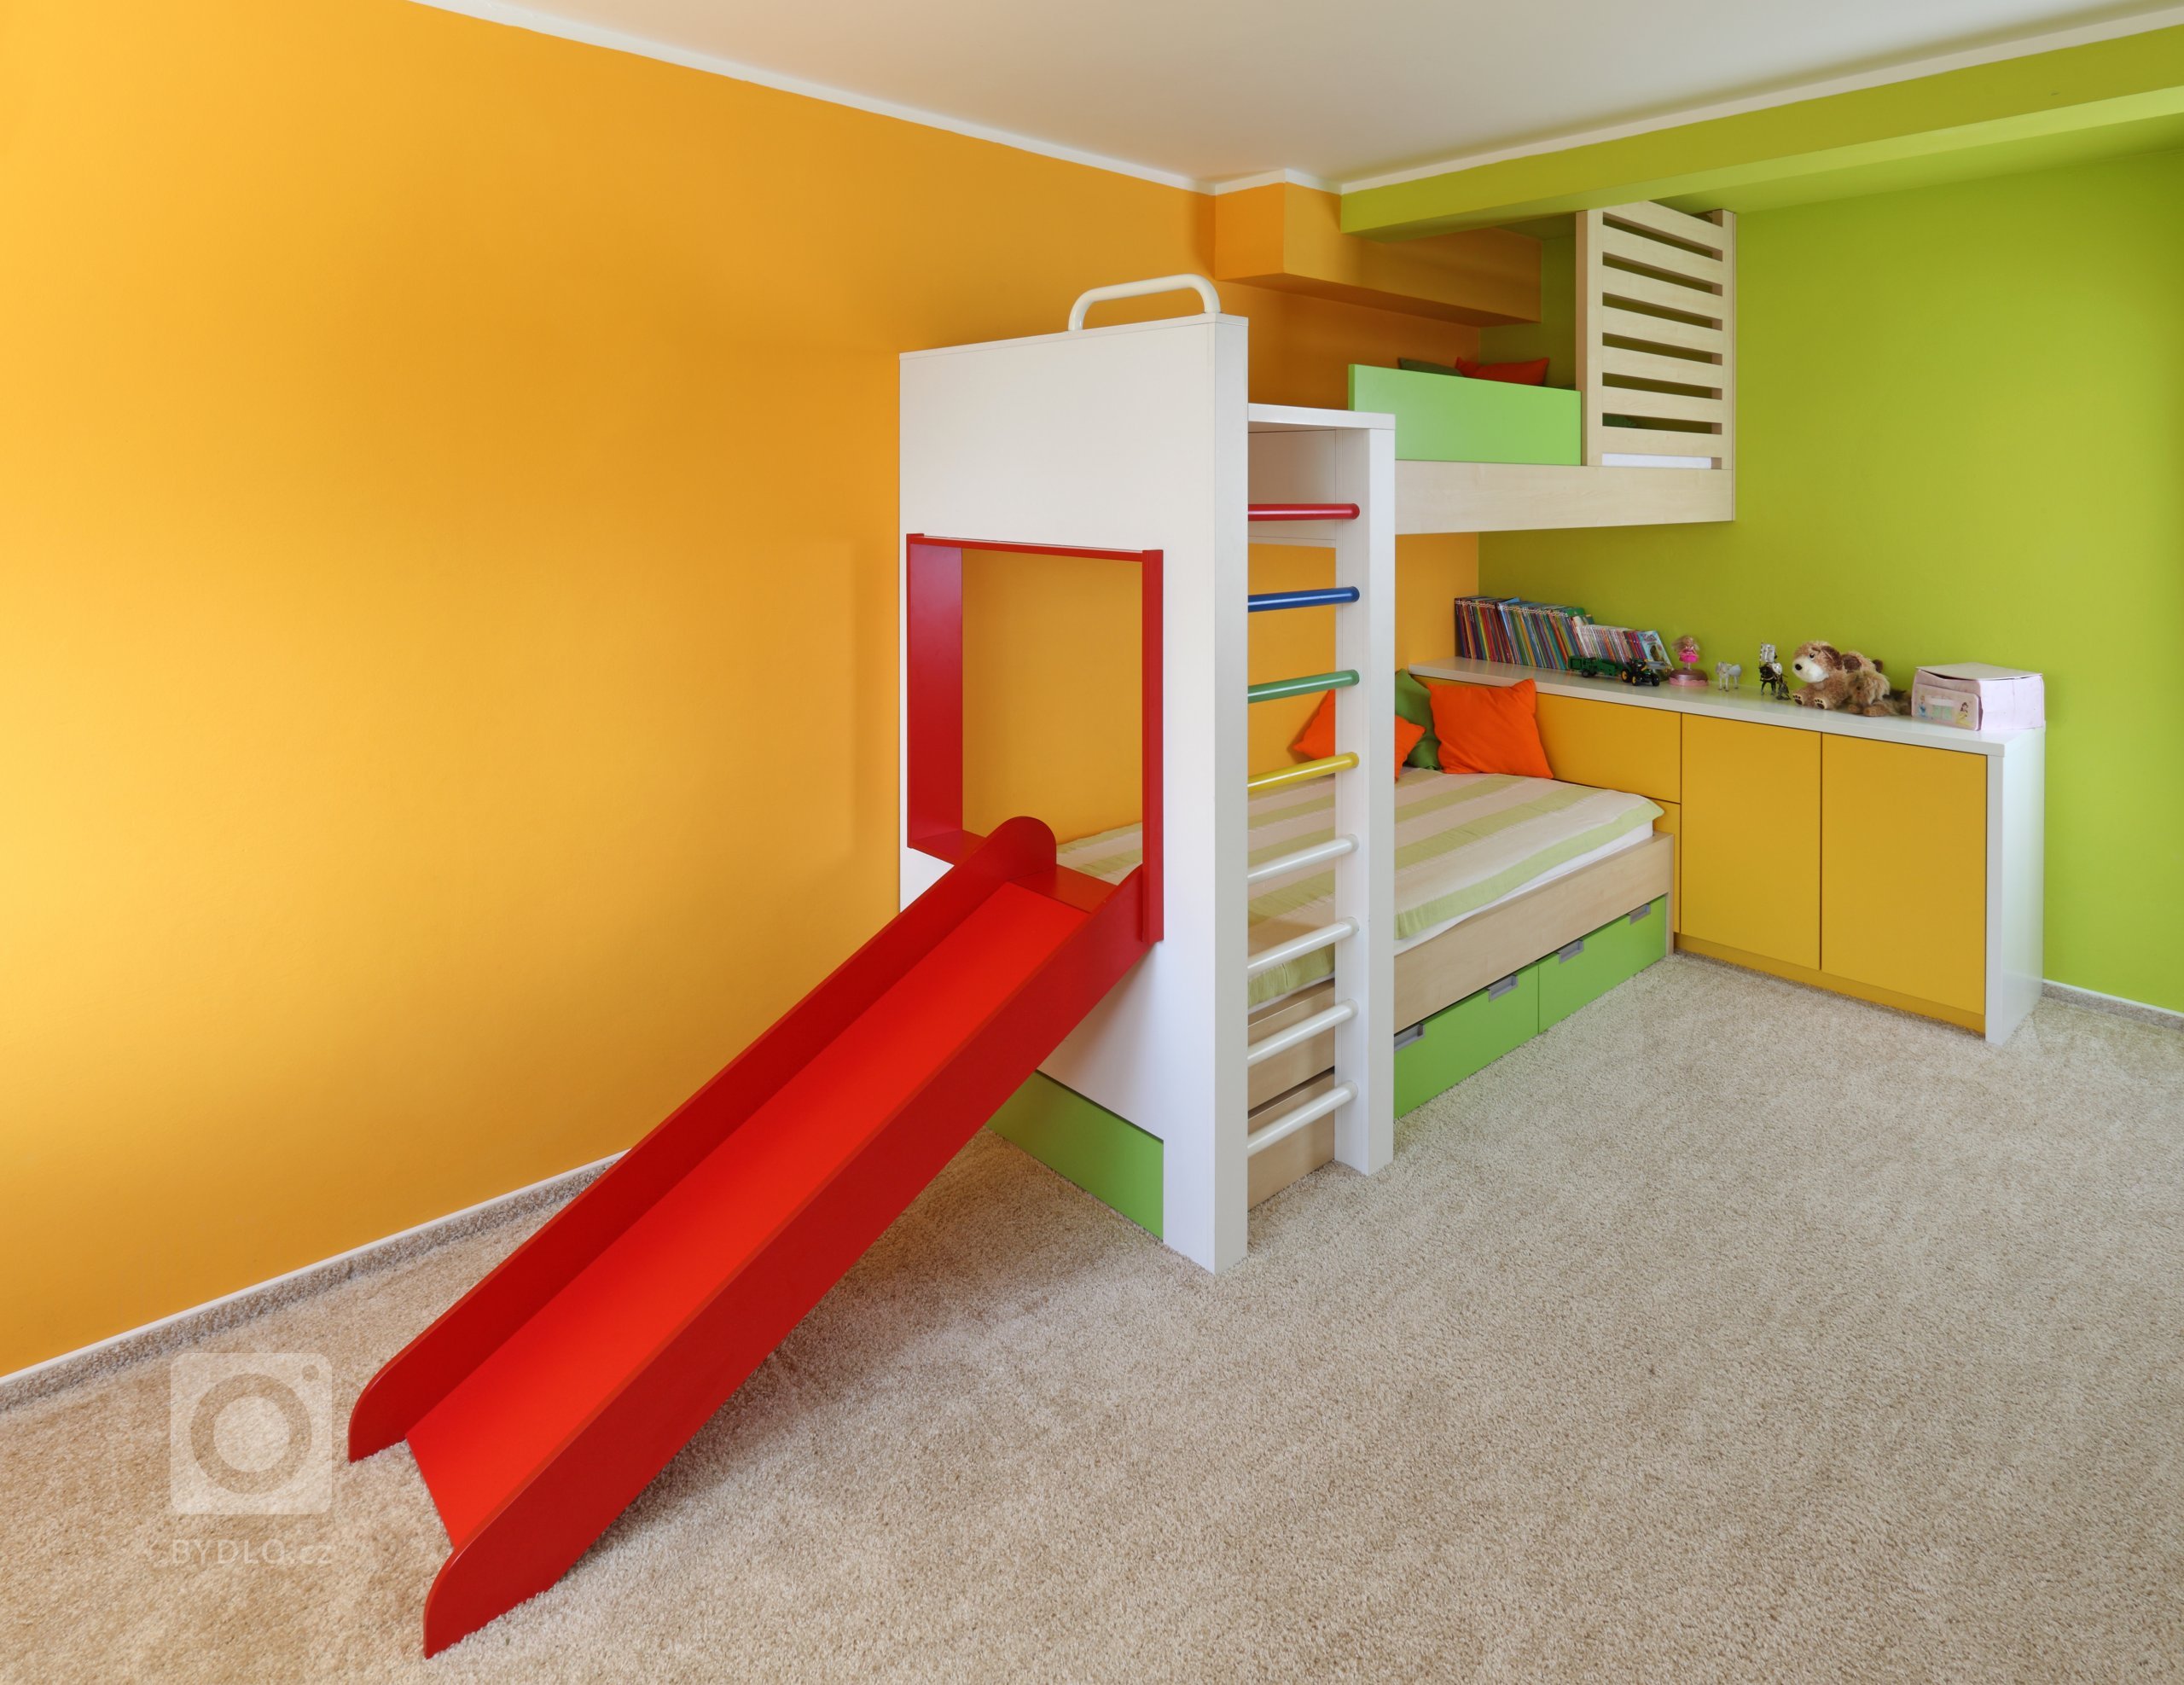 Barvy, hračky, prolézačky &ndash; zkrátka vše, co každé dítko ve svém pokoji potřebuje. Nejzábavnější součástí výbavy je tu určitě obložení postele, které…